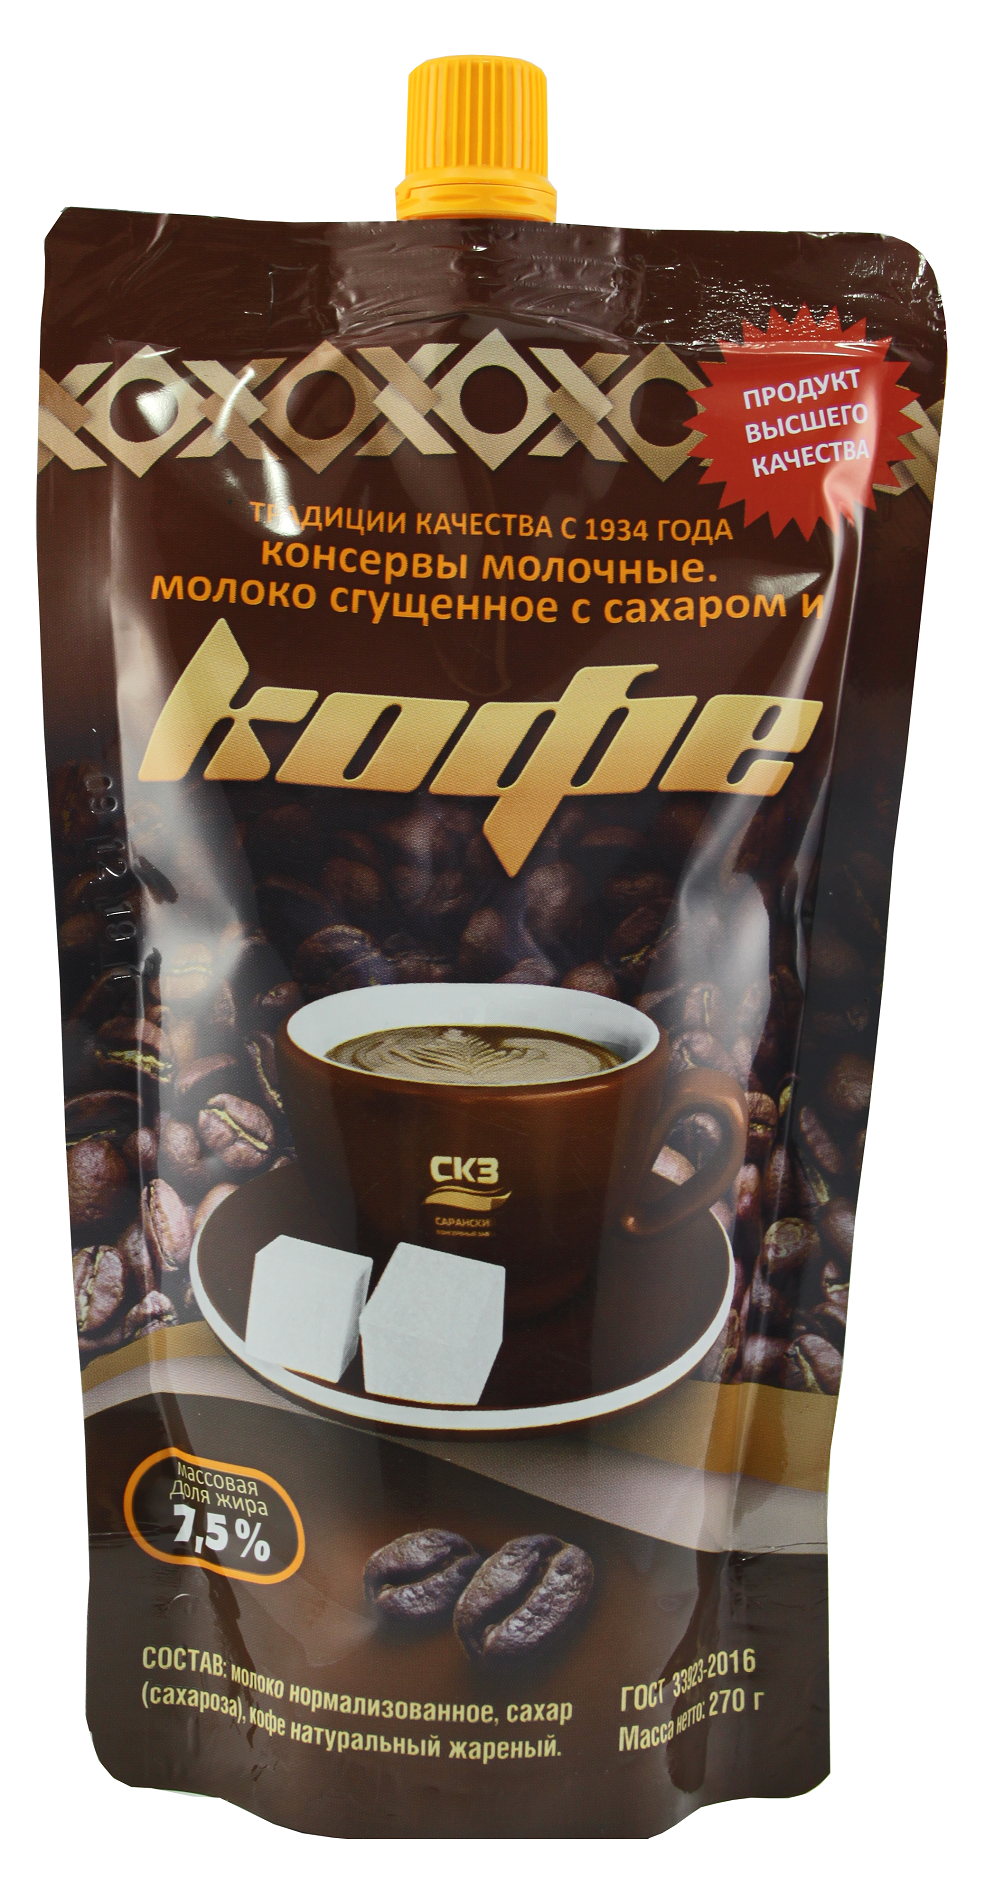 Кофе натуральный со сгущенным молоком и сахаром ГОСТ 33923-2016 doy-pack 270 гр